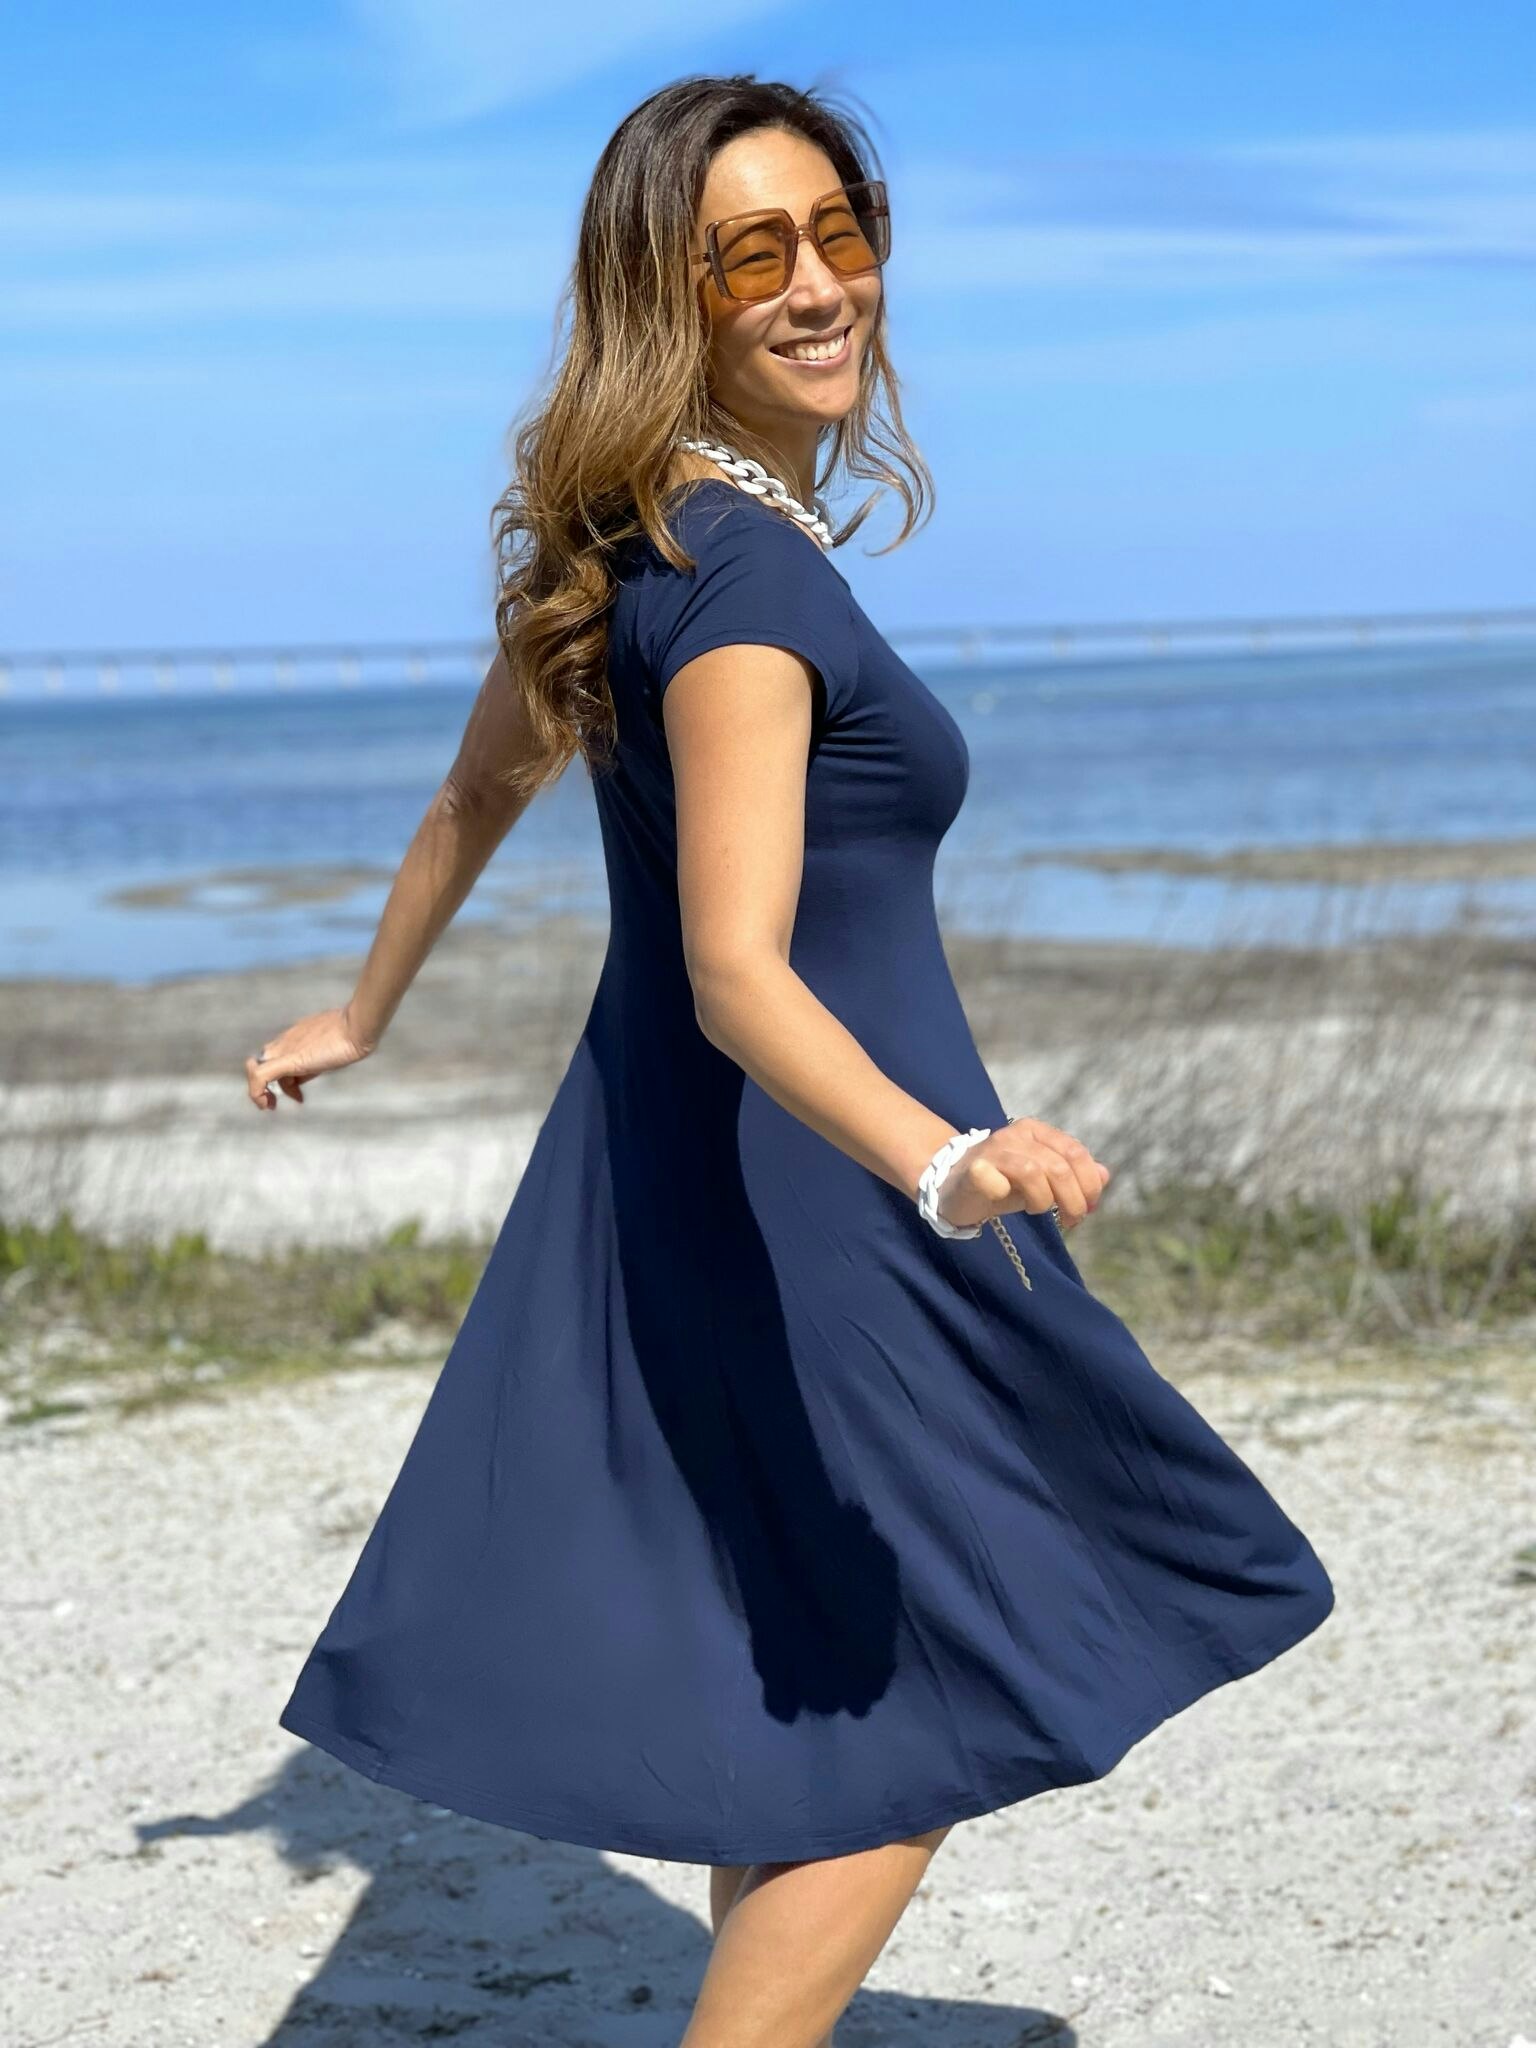 Marinblå trikåklänning I Skön klänning med stretch I Sommarklänning I Klänning klockad modell I Sköna klänningar